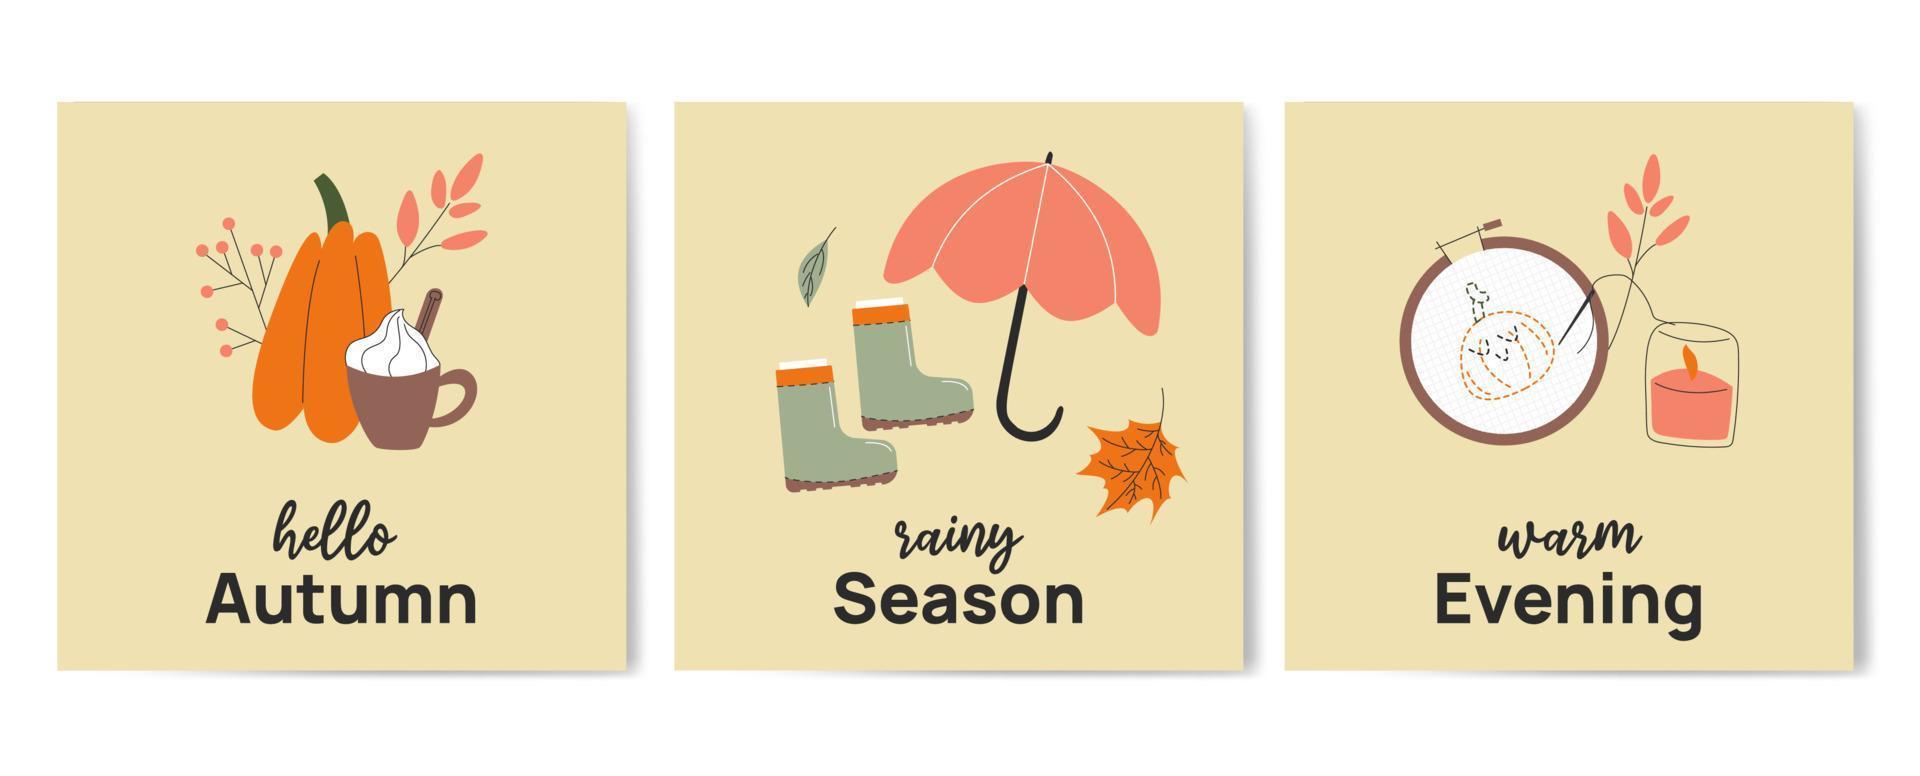 Olá outono. estação chuvosa. modelo de cartaz de cartão desenhado à mão de saudação de noite quente. cartão postal minimalista com abóbora, guarda-chuva, bordado. ilustração vetorial em estilo cartoon plana. vetor